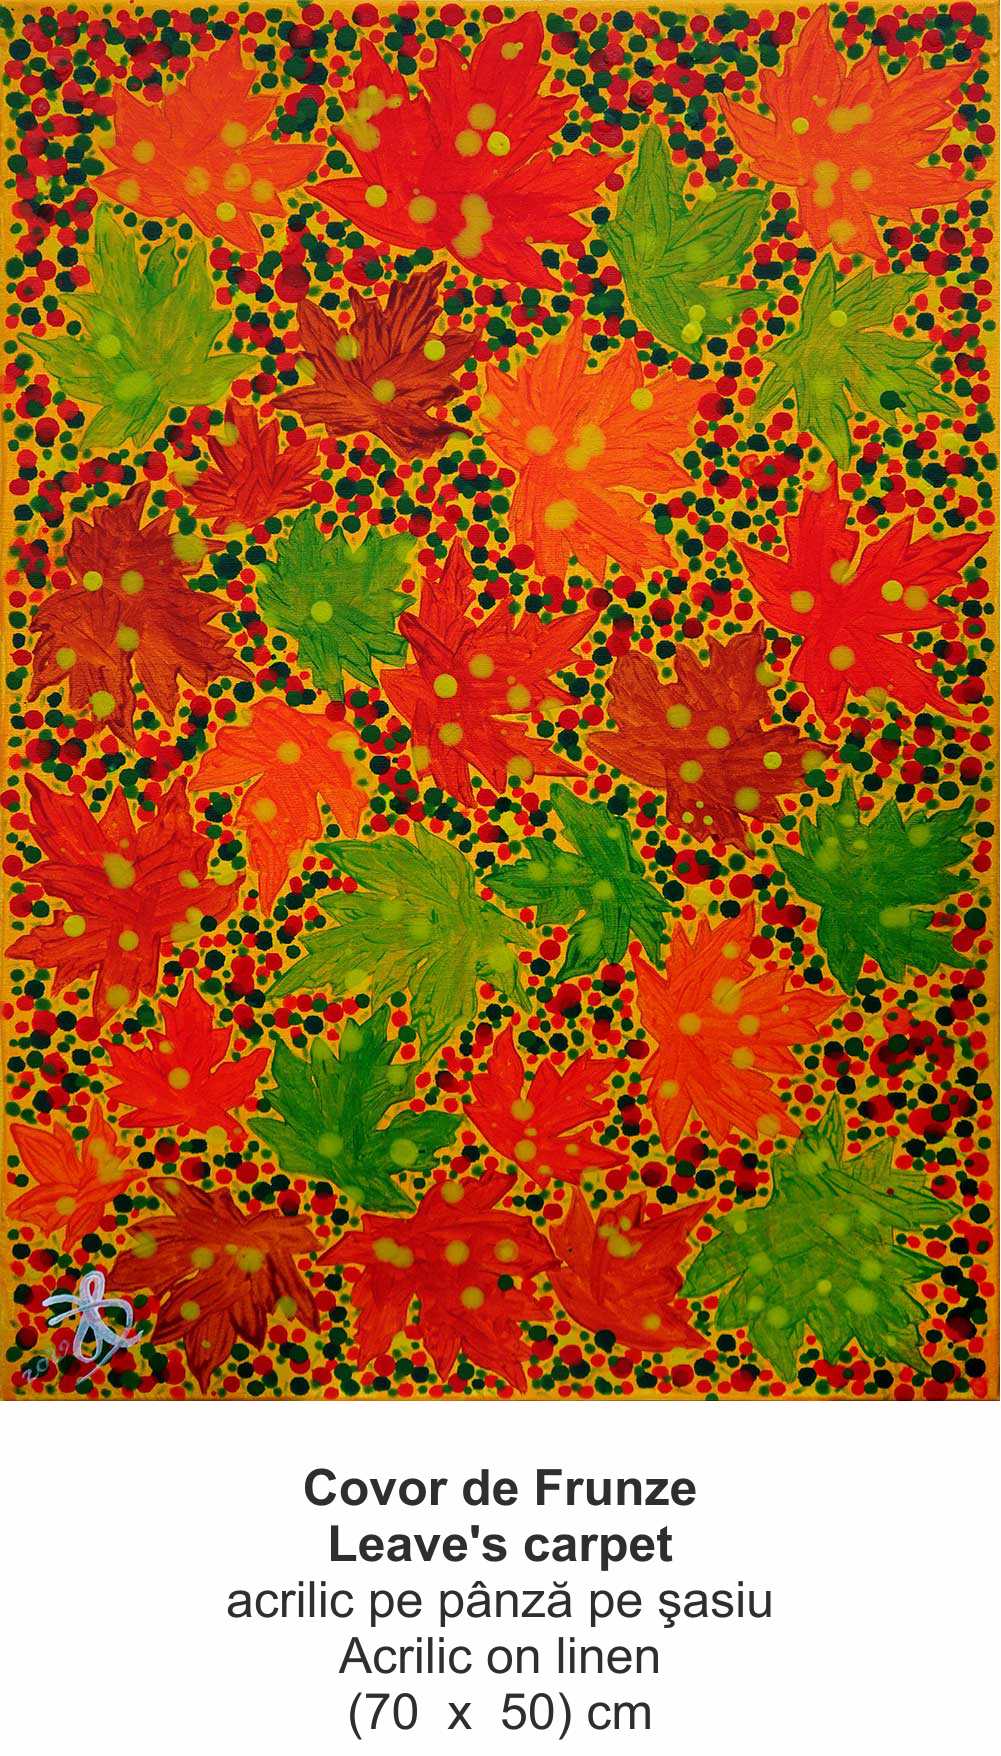 „Covor de Frunze” („Leave's carpet ”) - acrilic pe pânză pe şasiu (Acrilic on linen) - (70  x  50) cm - img 28